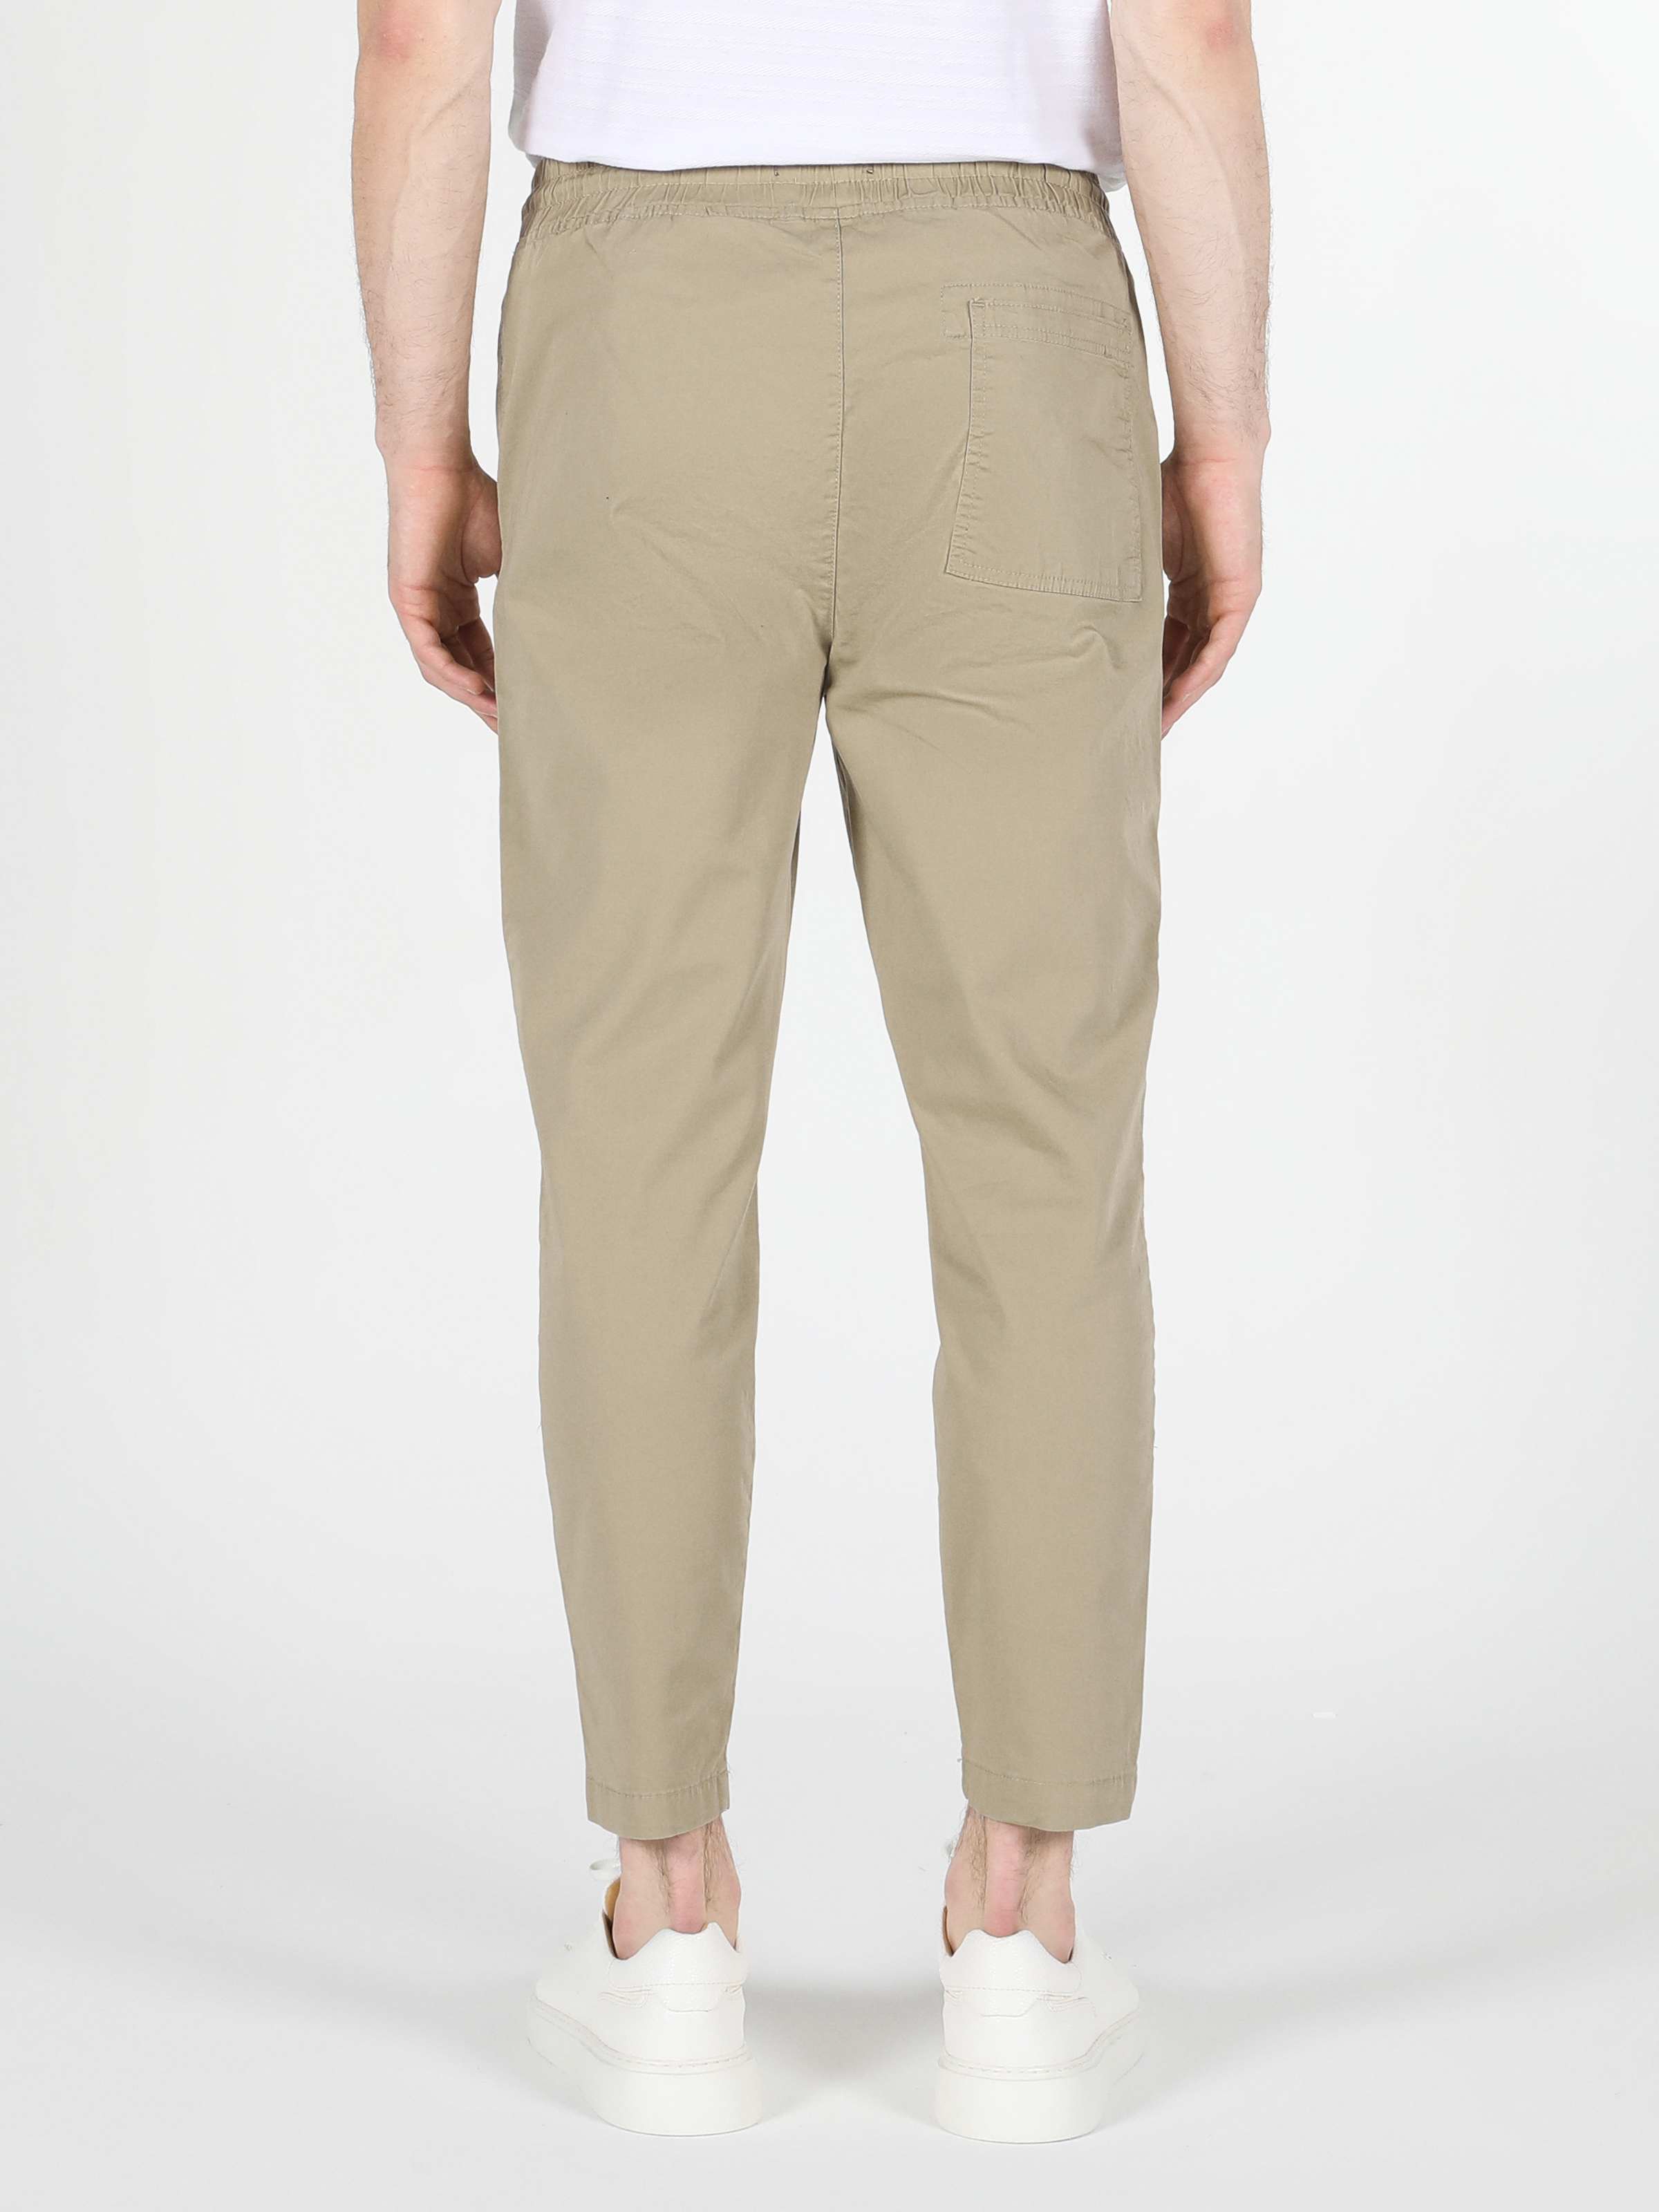 Afficher les détails de Pantalon Homme Taille Moyenne Coupe Regular Jambe Droite